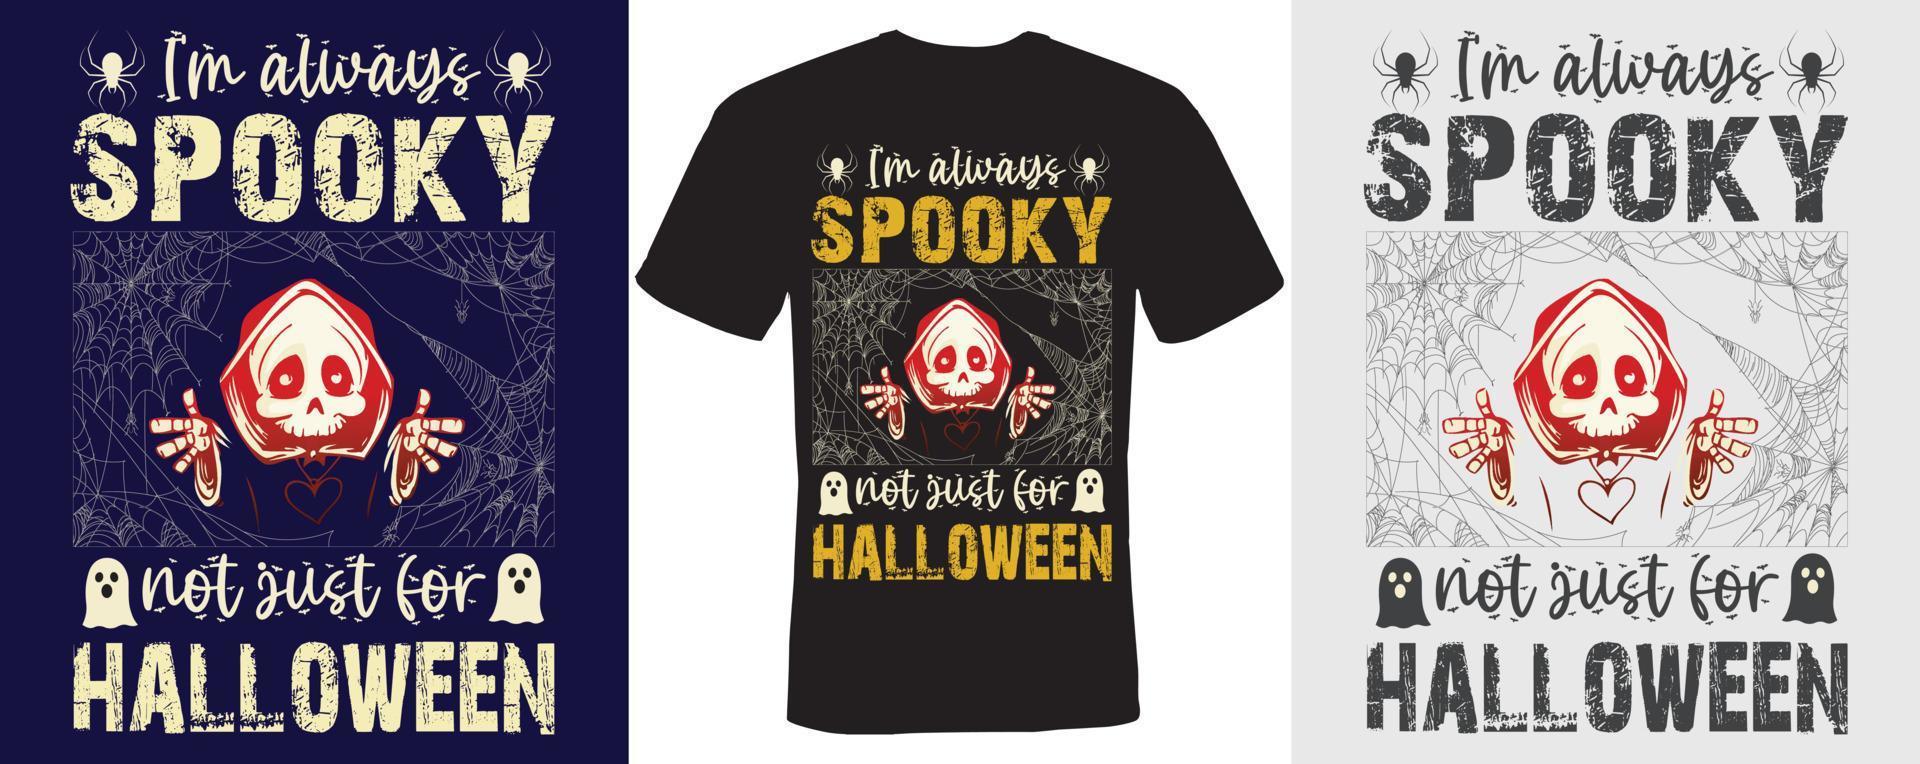 eu sou sempre assustador não apenas para design de camiseta de halloween para halloween vetor